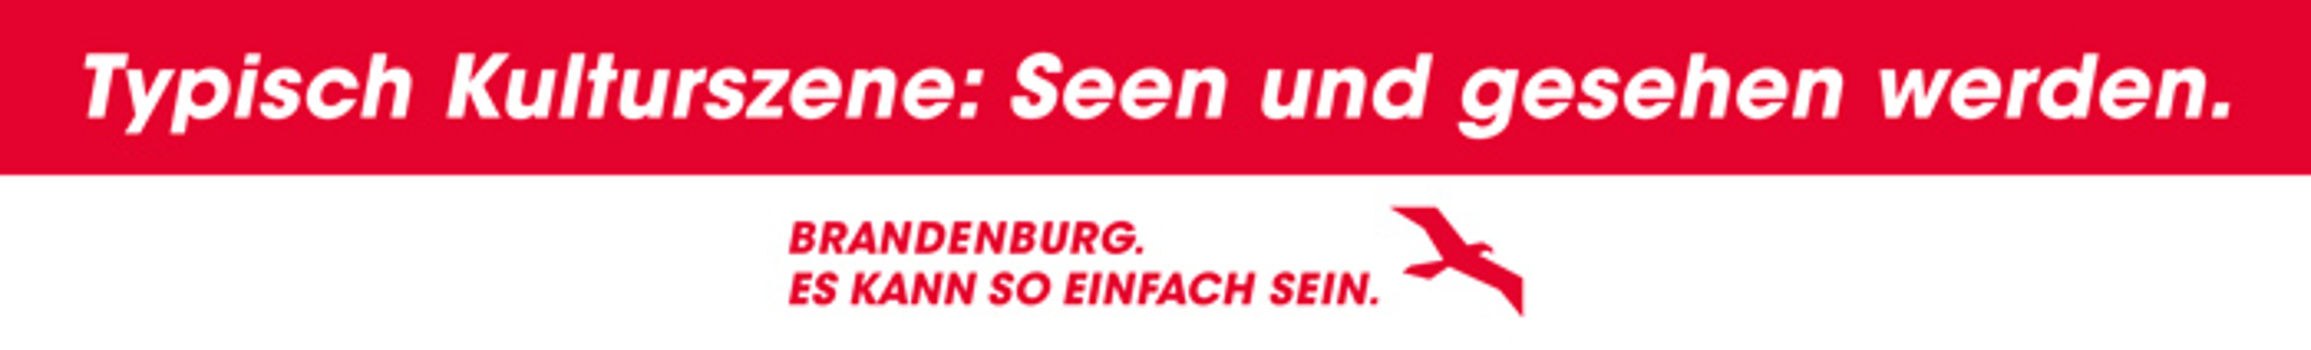 Ein rot-weißes Banner mit dem Schriftzug "Typisch Kulturszene: Seen und gesehen werden." Darunter das Kampagnenlogo "Brandenburg. Es kann so einfach sein."